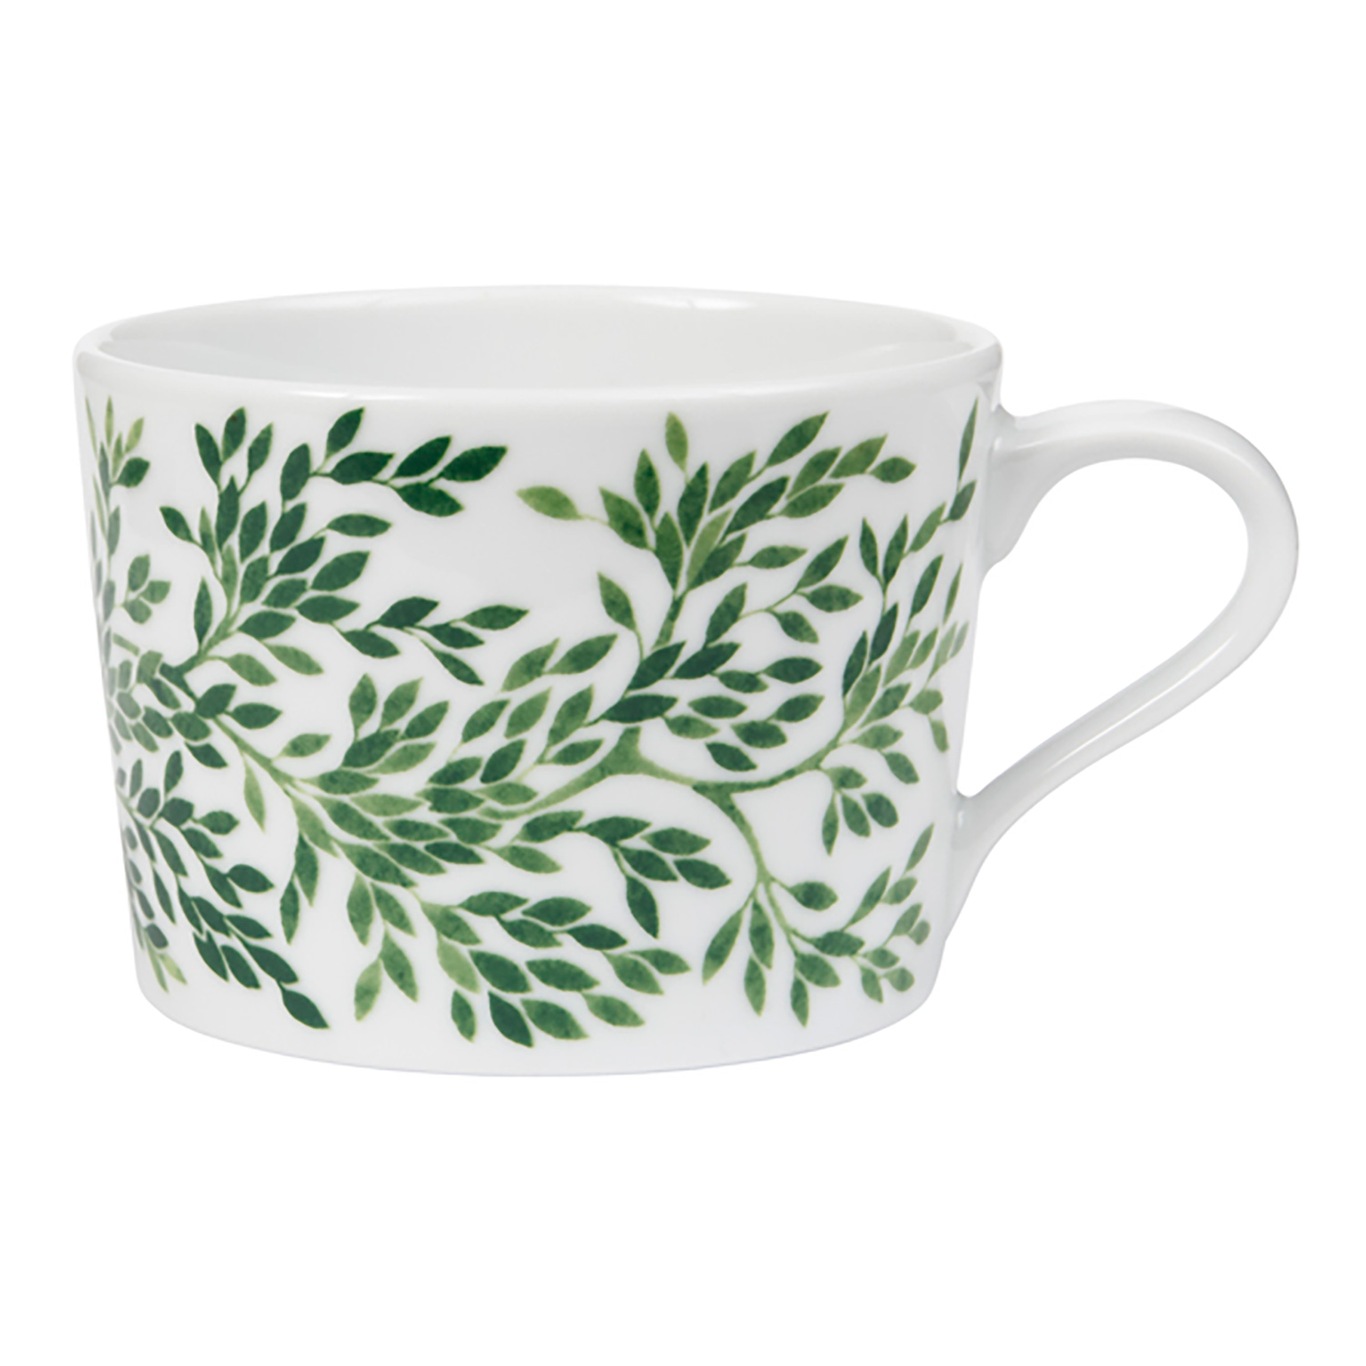 Botanica Myrten Cup, Green